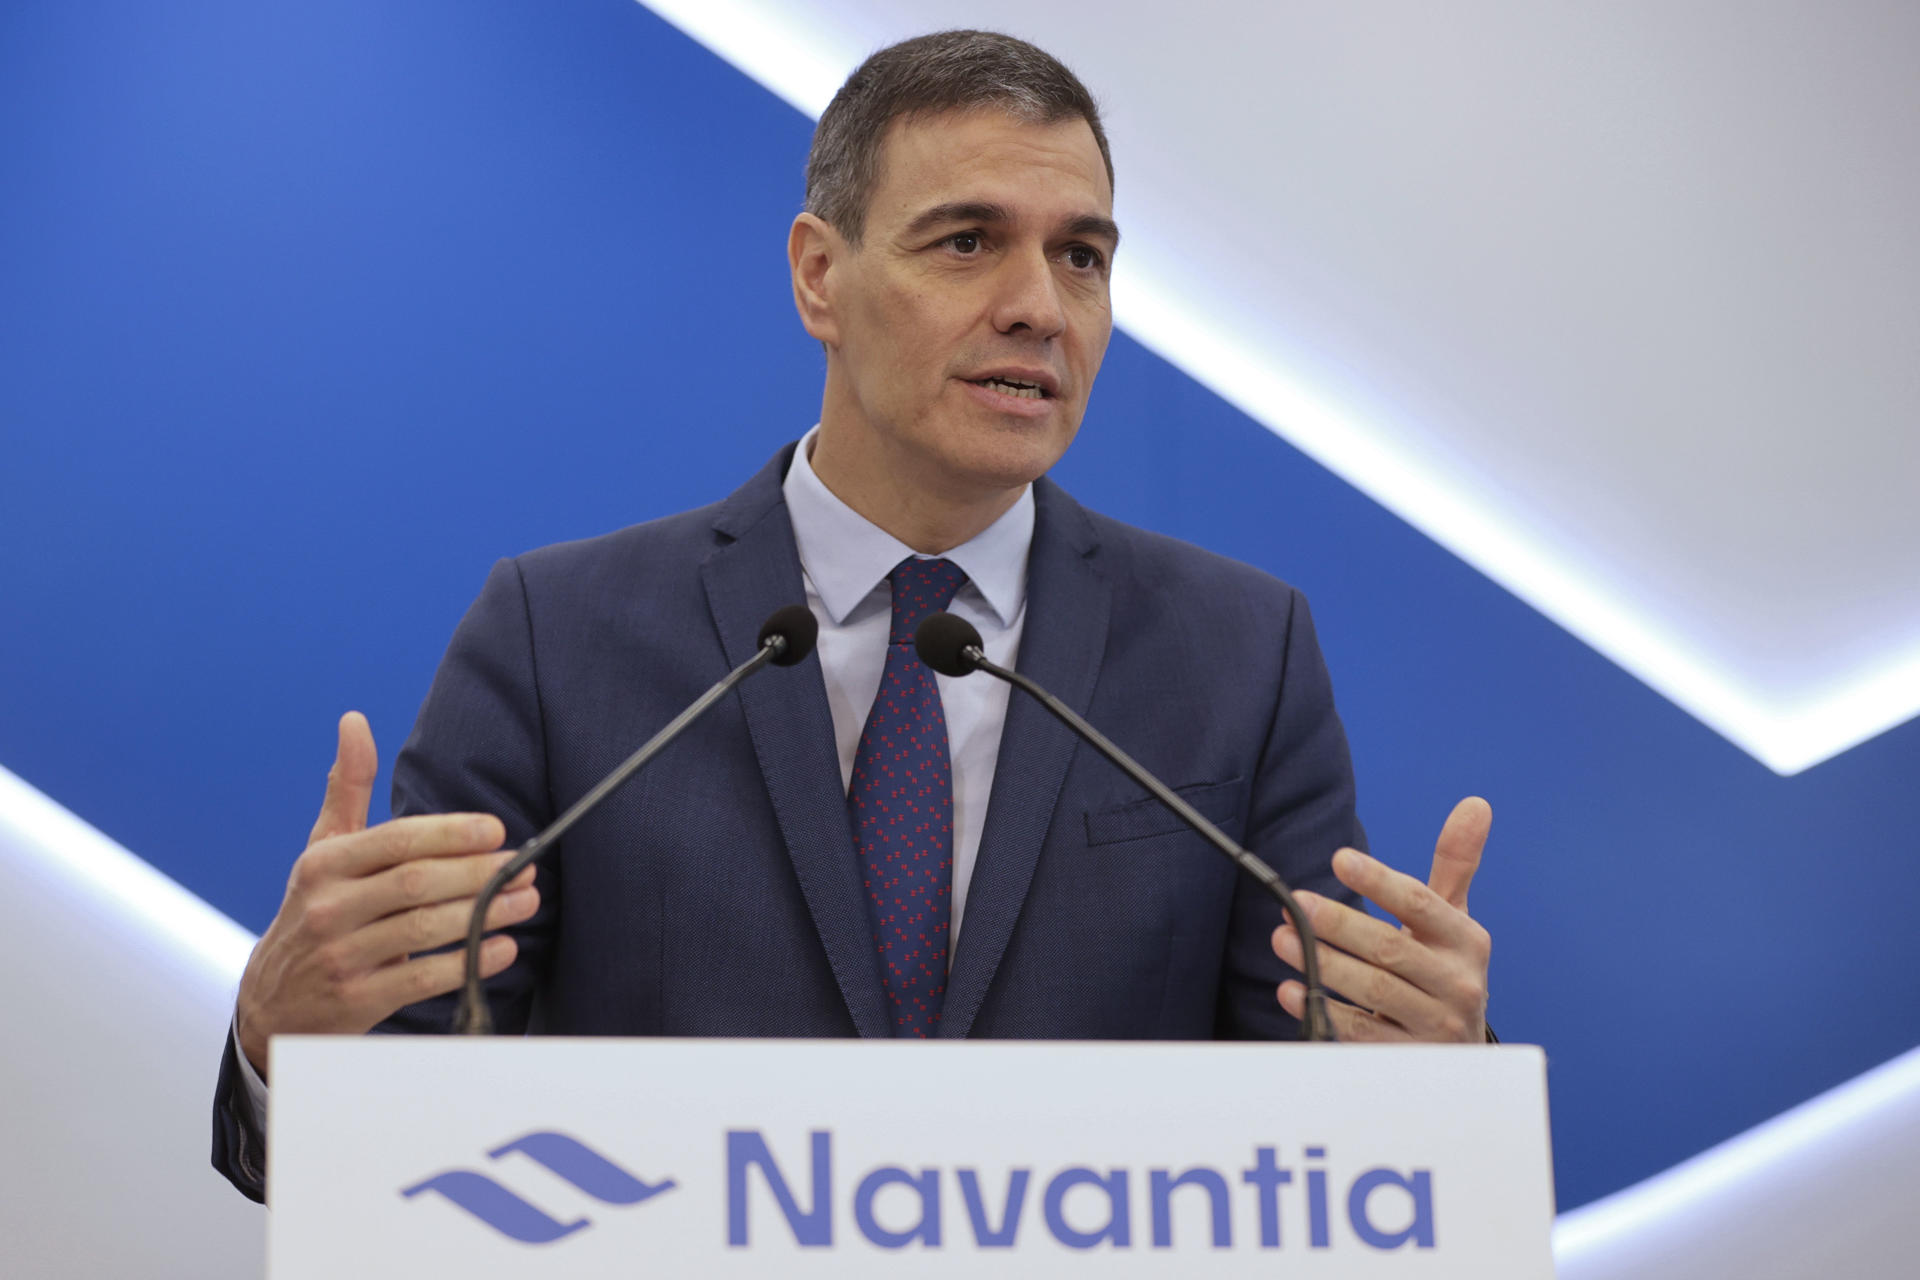 La Junta Electoral abre expediente a Sánchez por hacer campaña en Galicia con su visita a Navantia